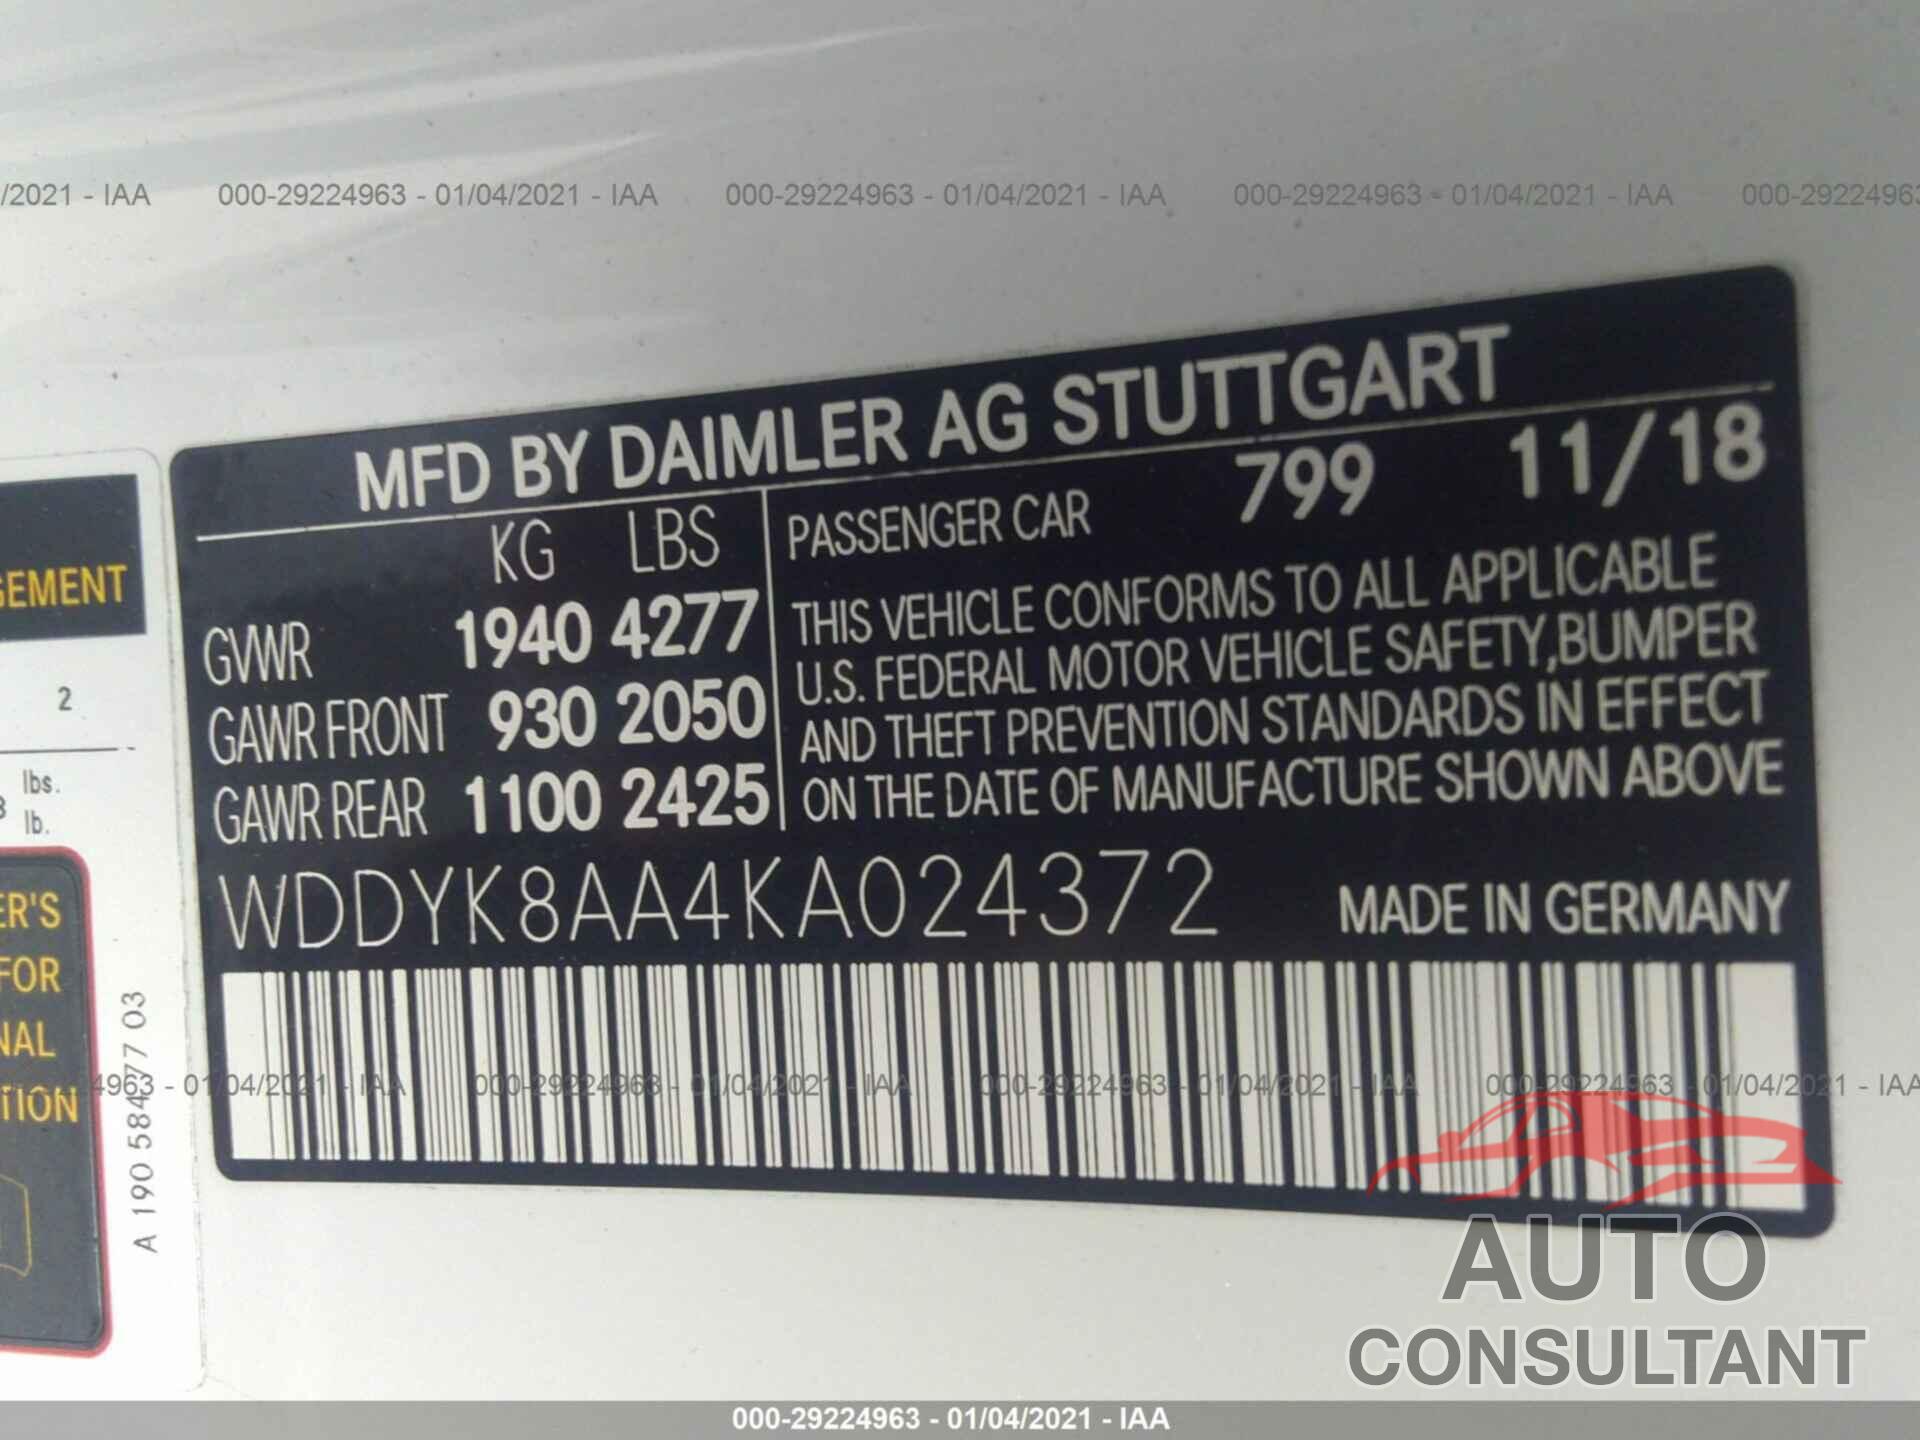 MERCEDES-BENZ AMG GT 2019 - WDDYK8AA4KA024372